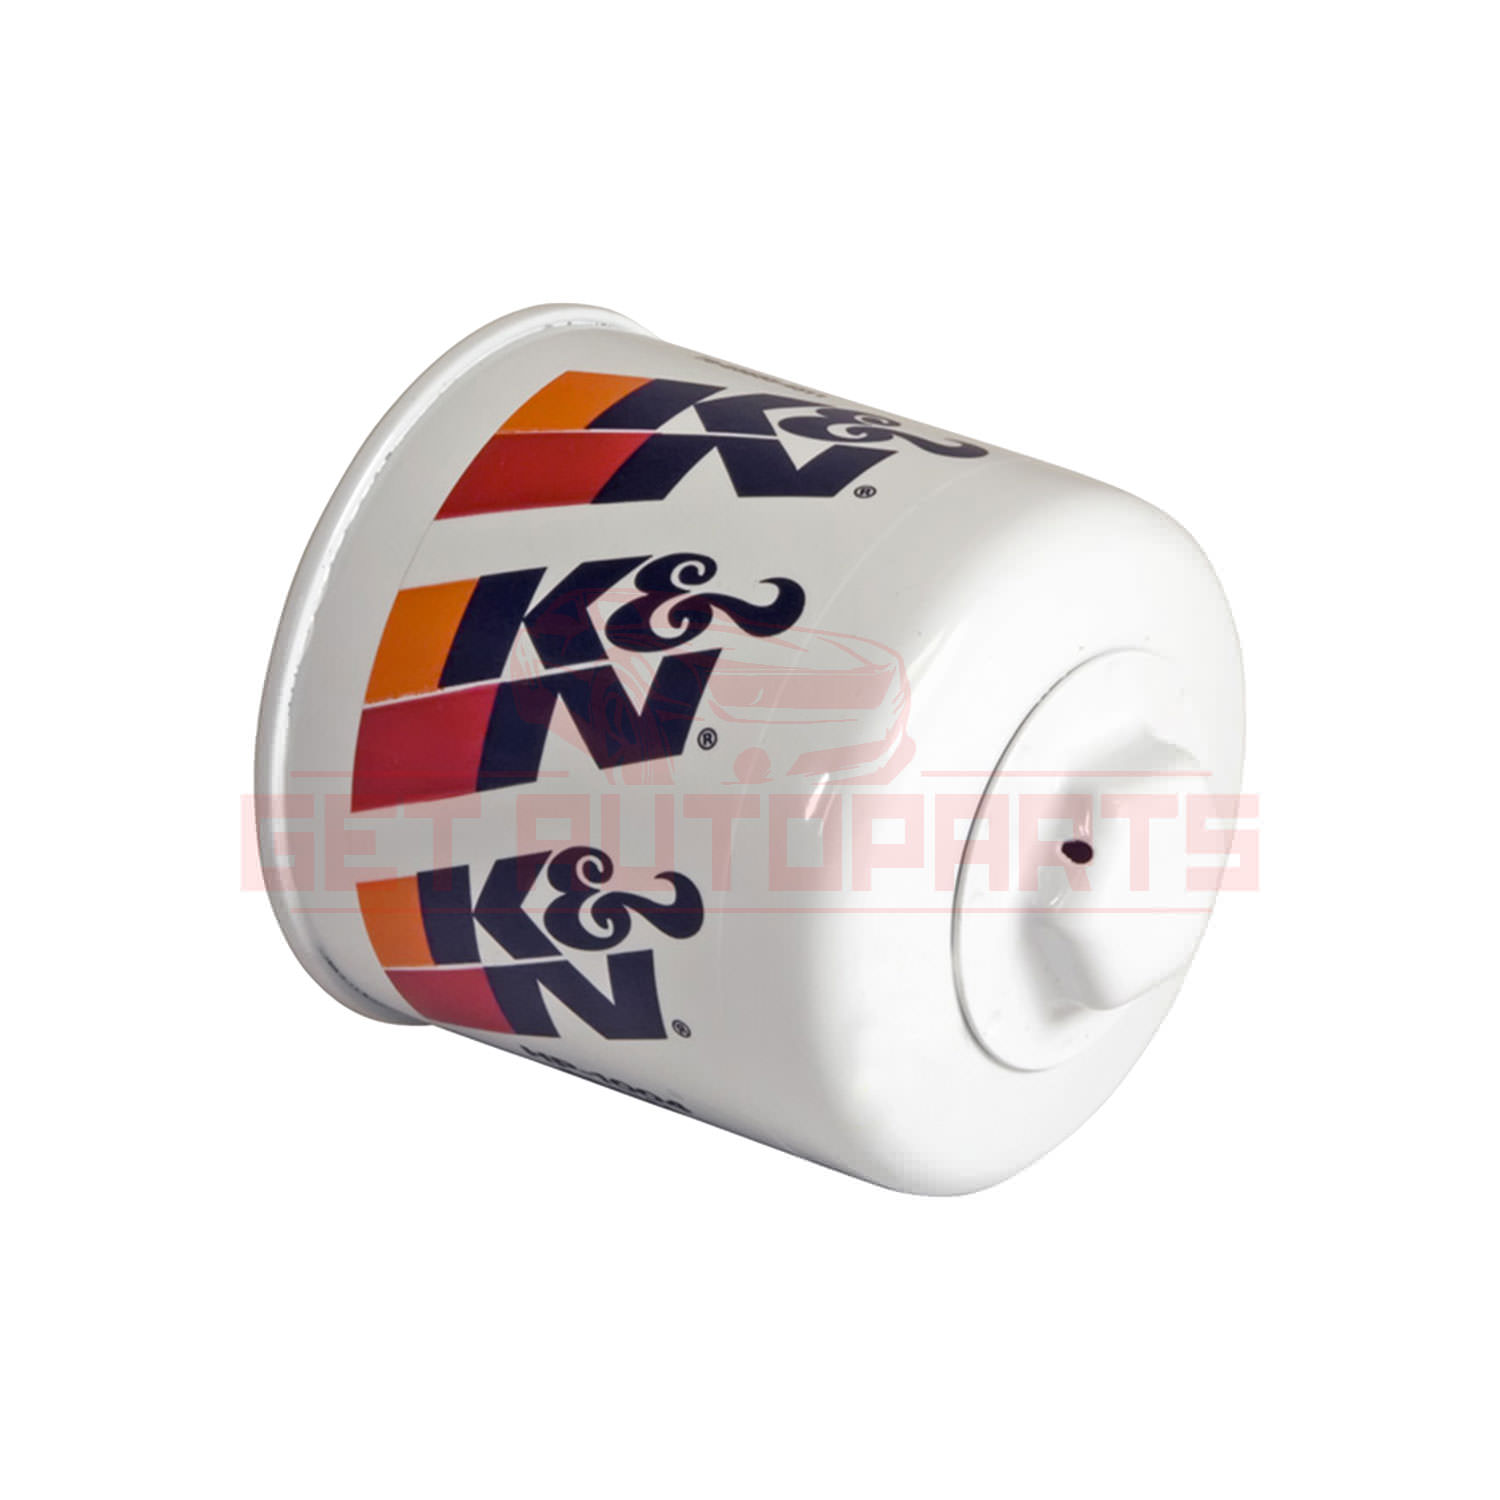 K&N Oil Filter for Subaru Justy 19